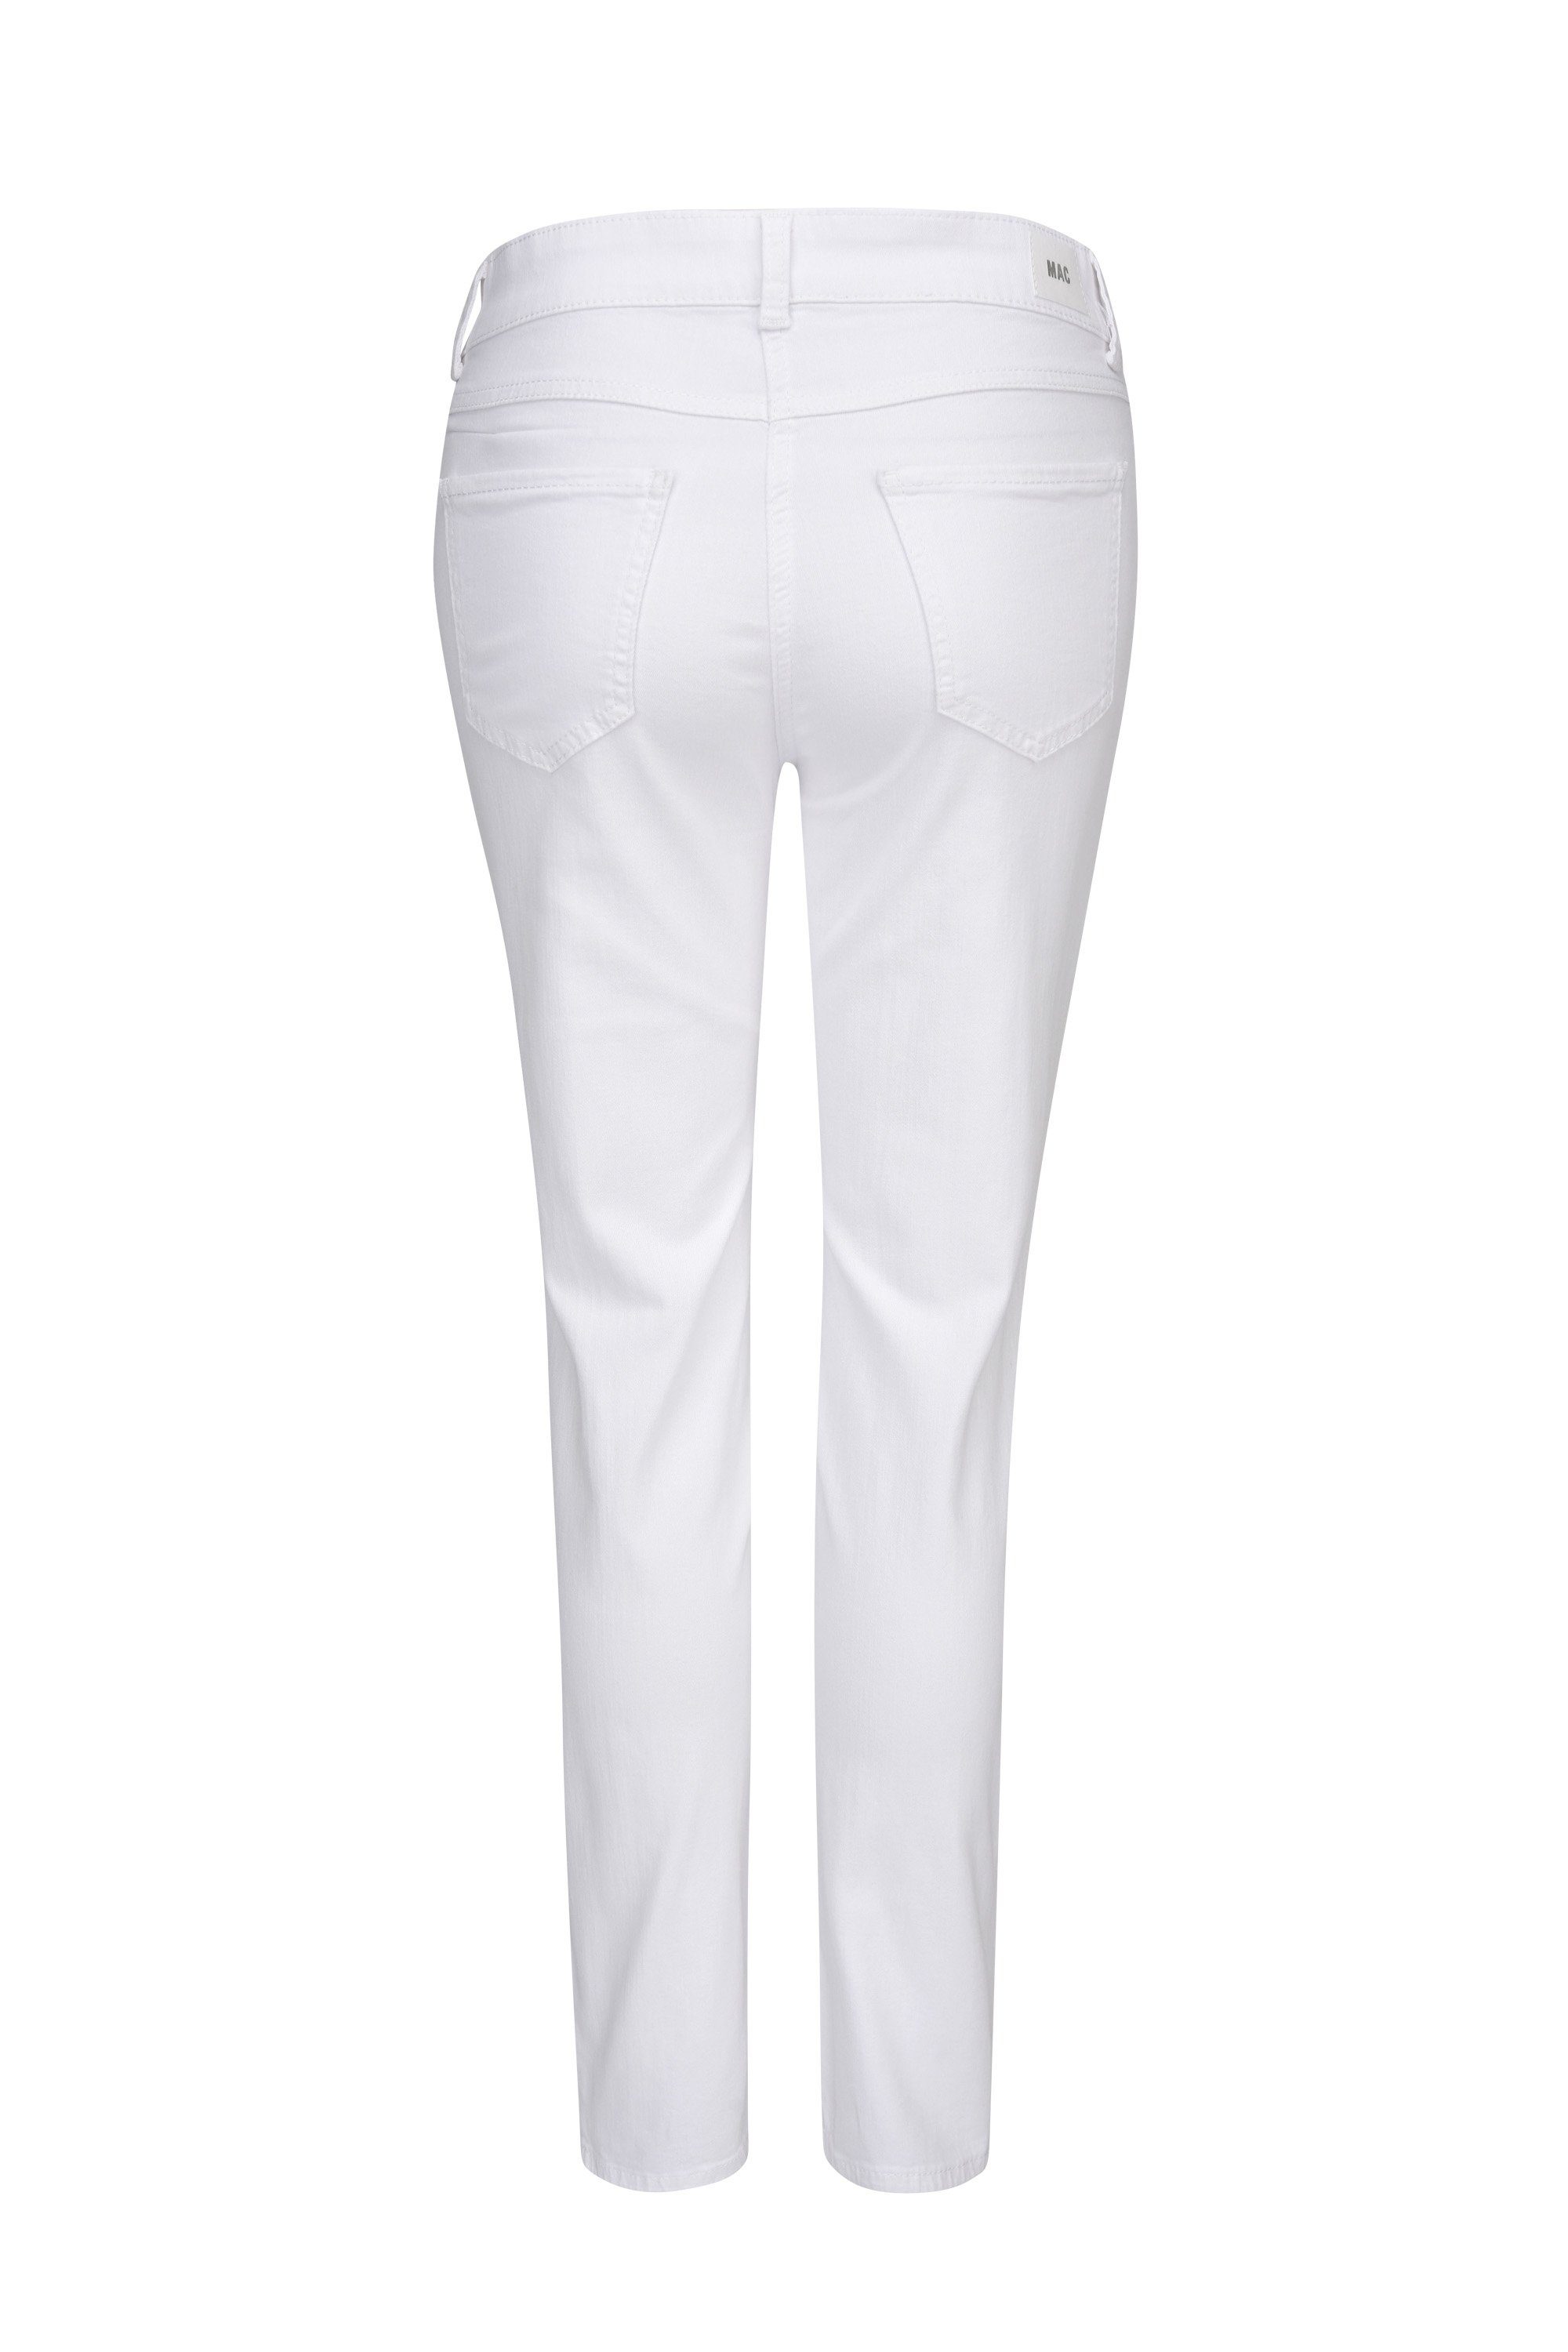 Damen Jeans MAC Stretch-Jeans MAC ANGELA 7/8 SUMMER clean white 5209-90-0371-D01